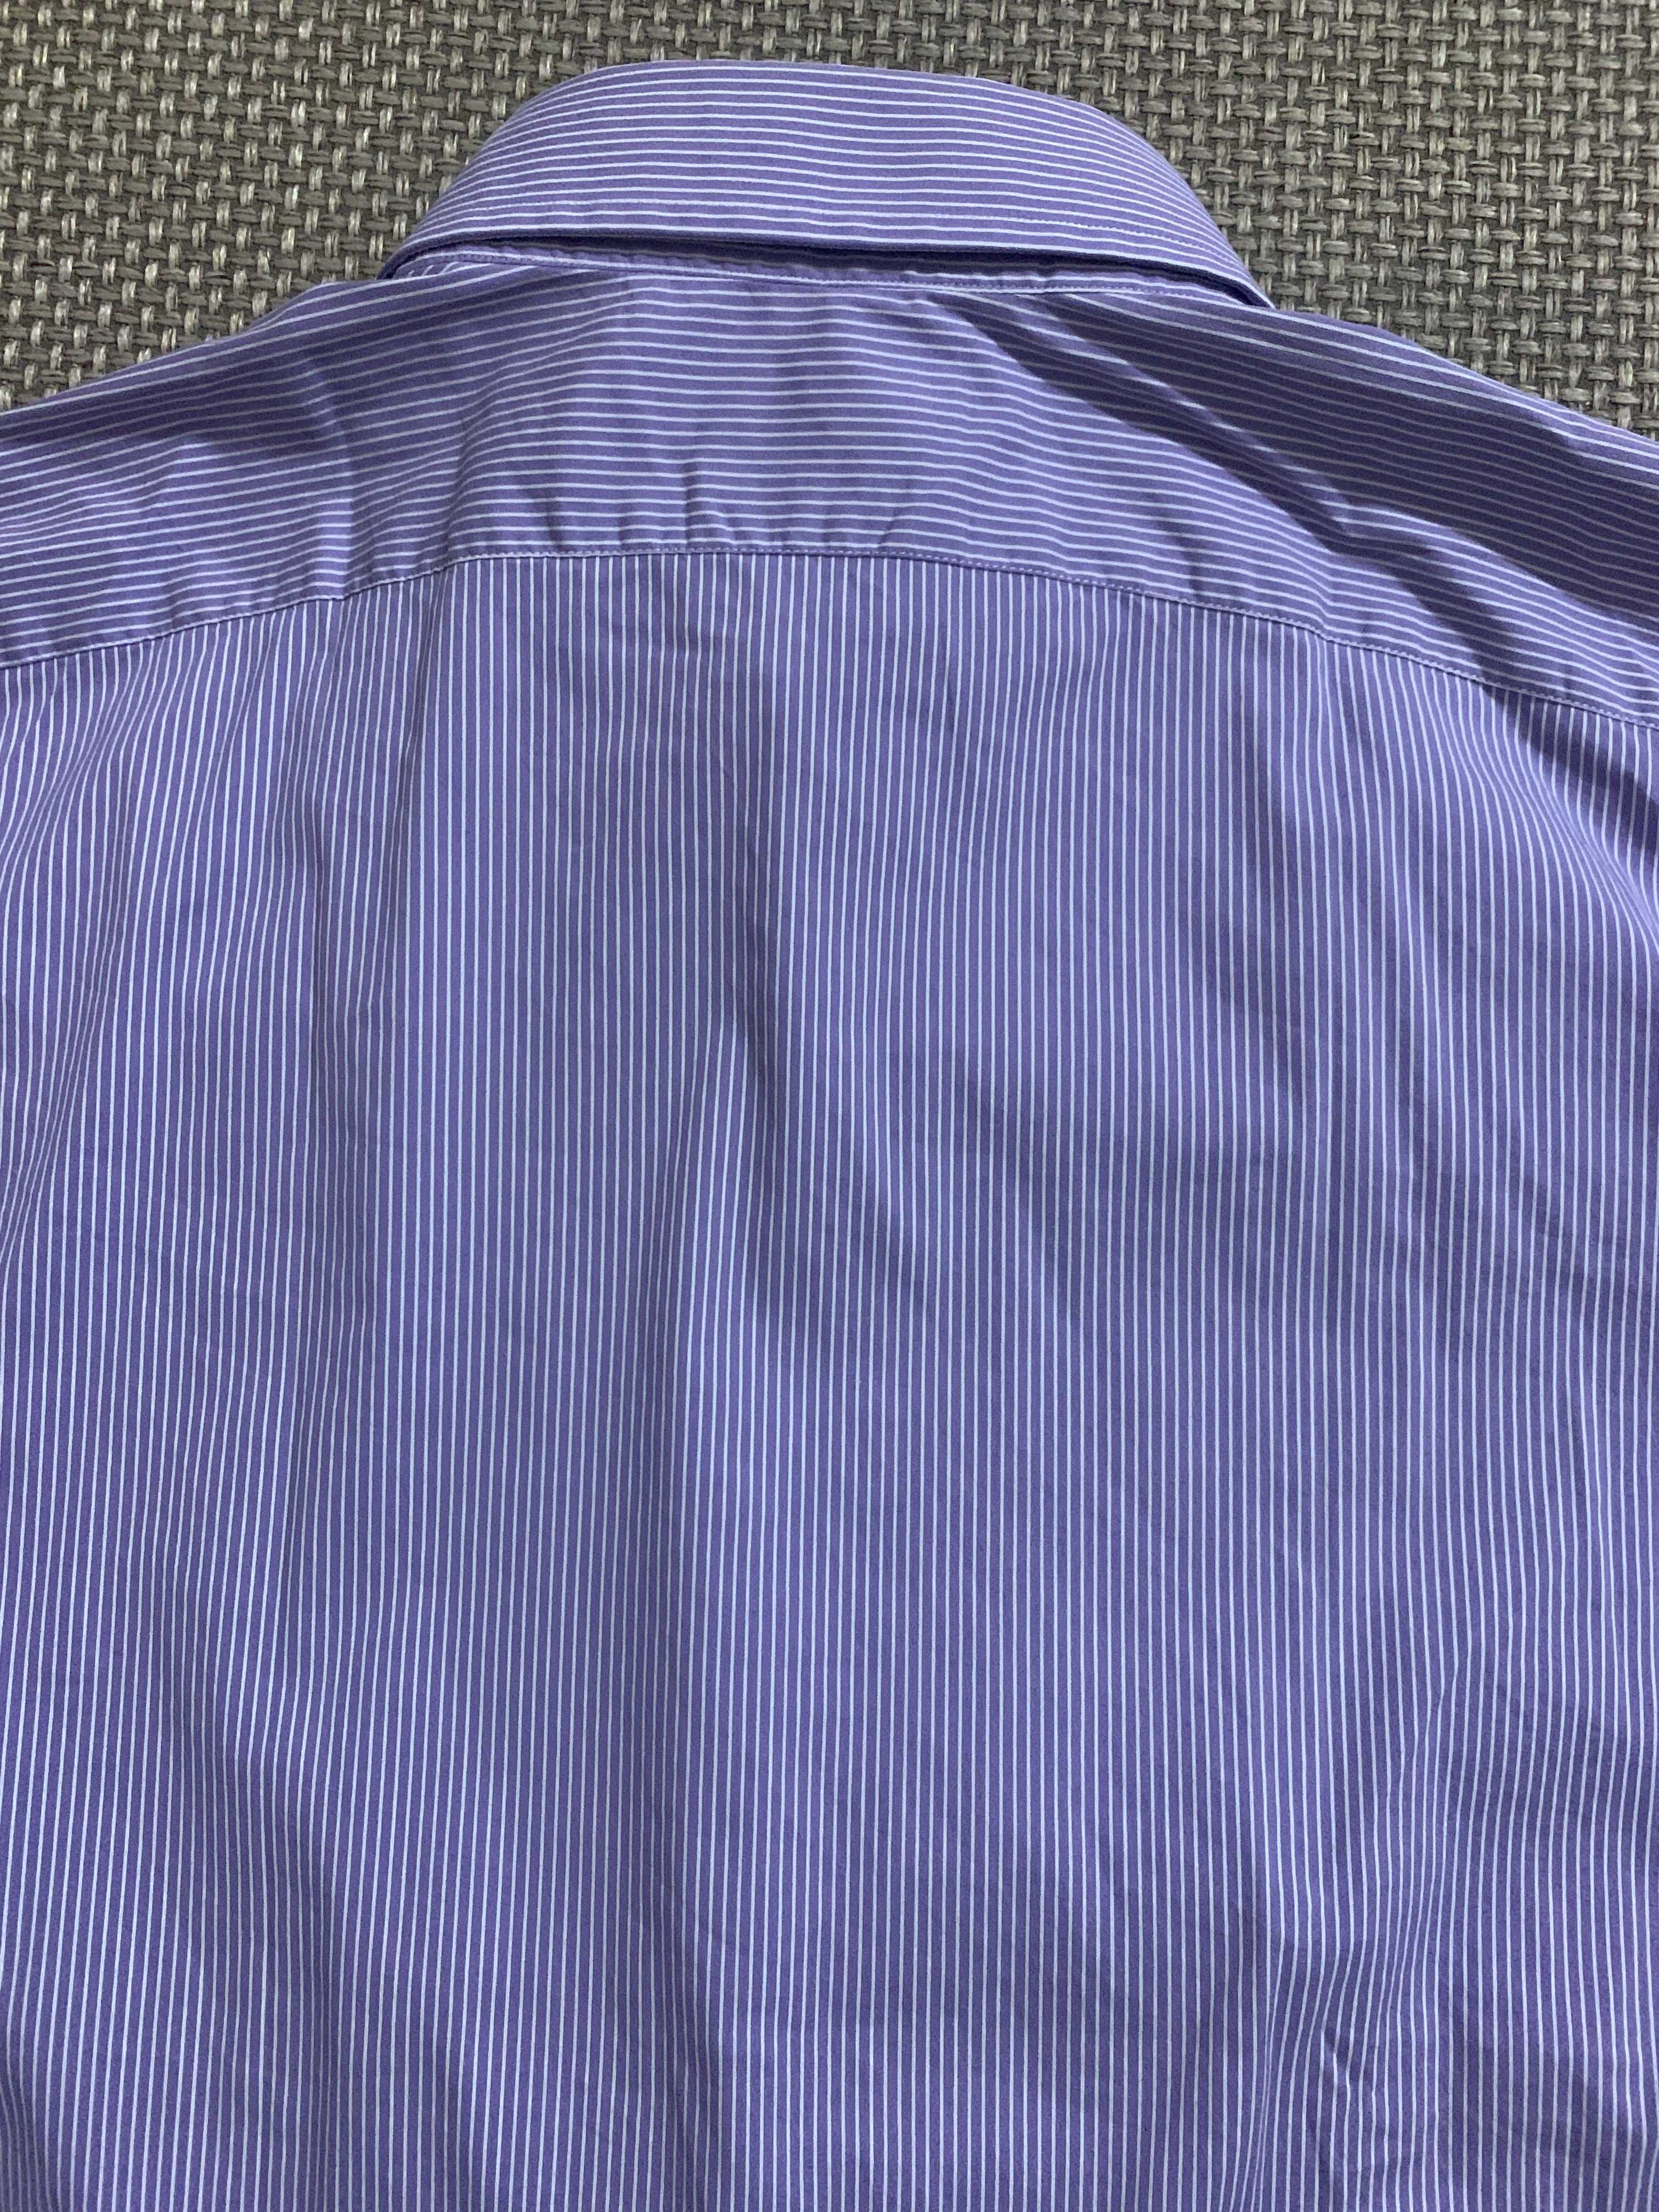 Мужская рубашка Ralph Lauren Tailored Fit с длинным рукавом. L